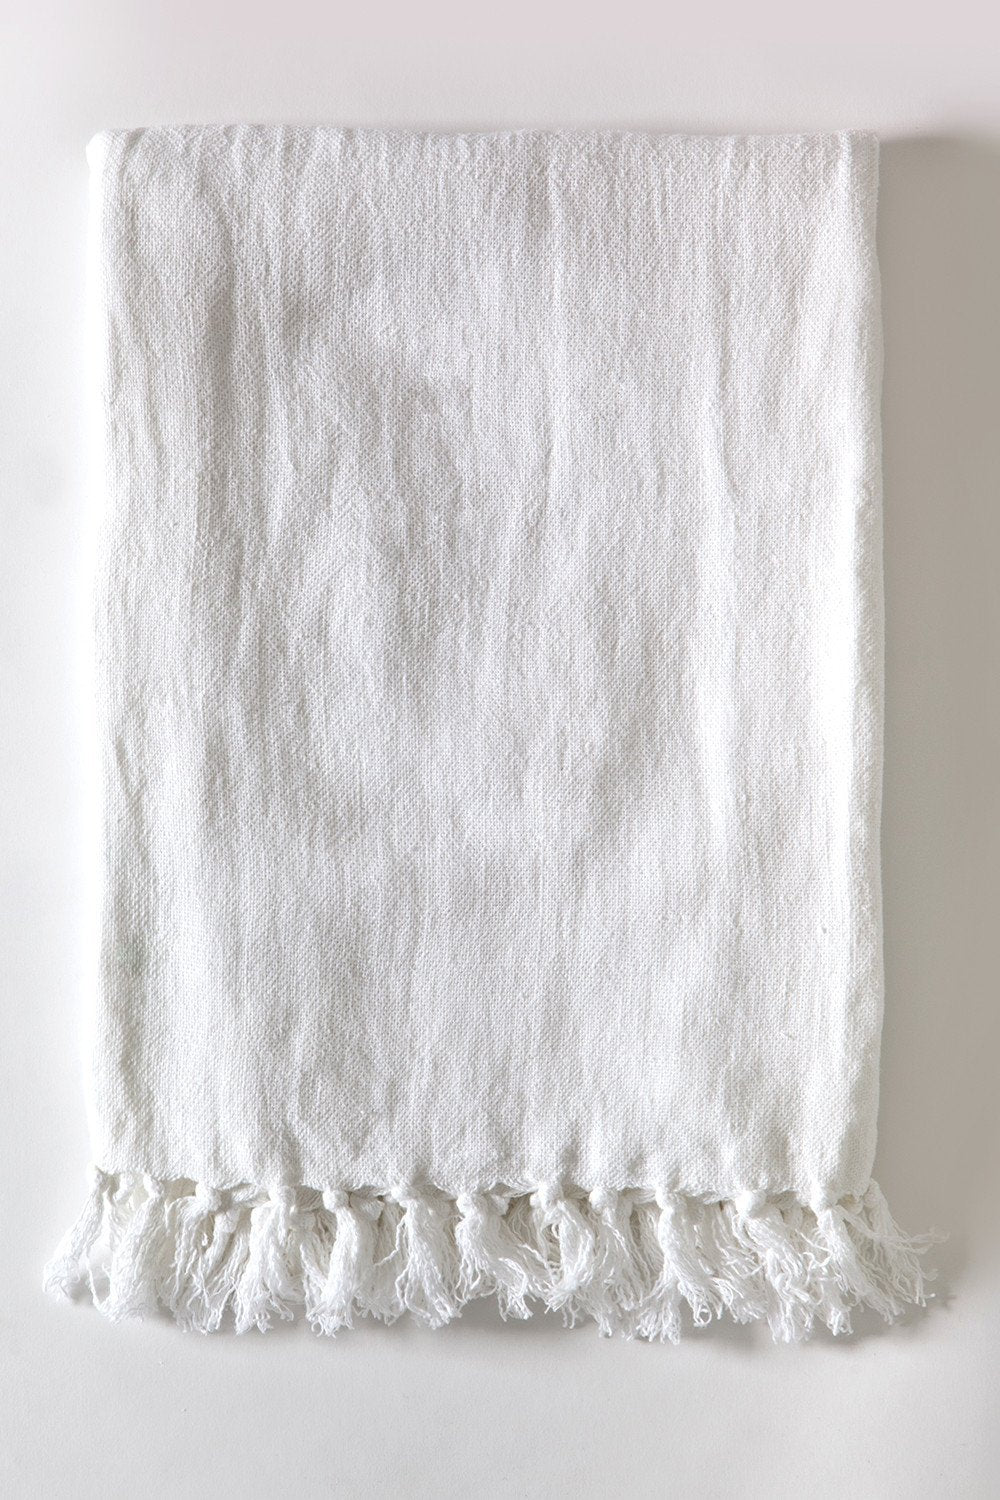 Fig Linens - Pom Pom at Home Montauk White Blanket